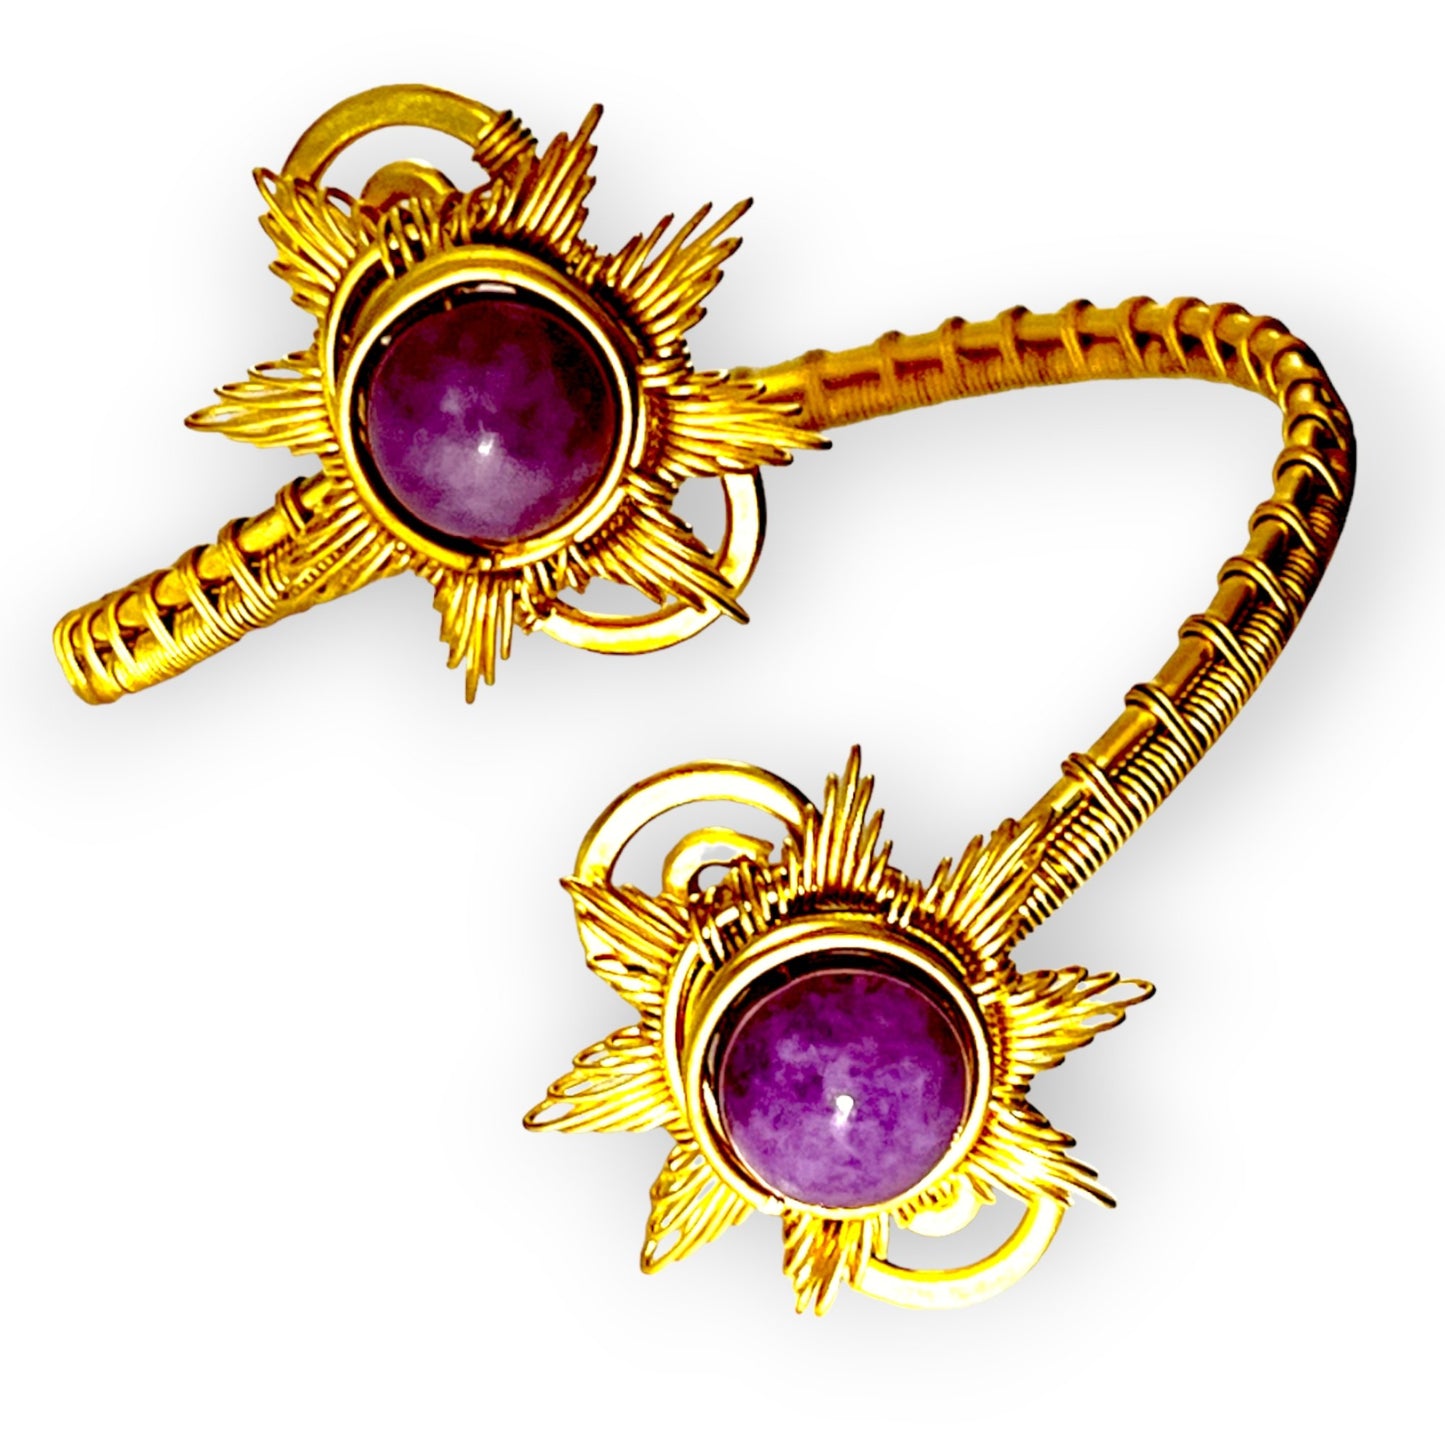 Purple gemstone serpentine cuff bracelet with close weave patternSundara Joon